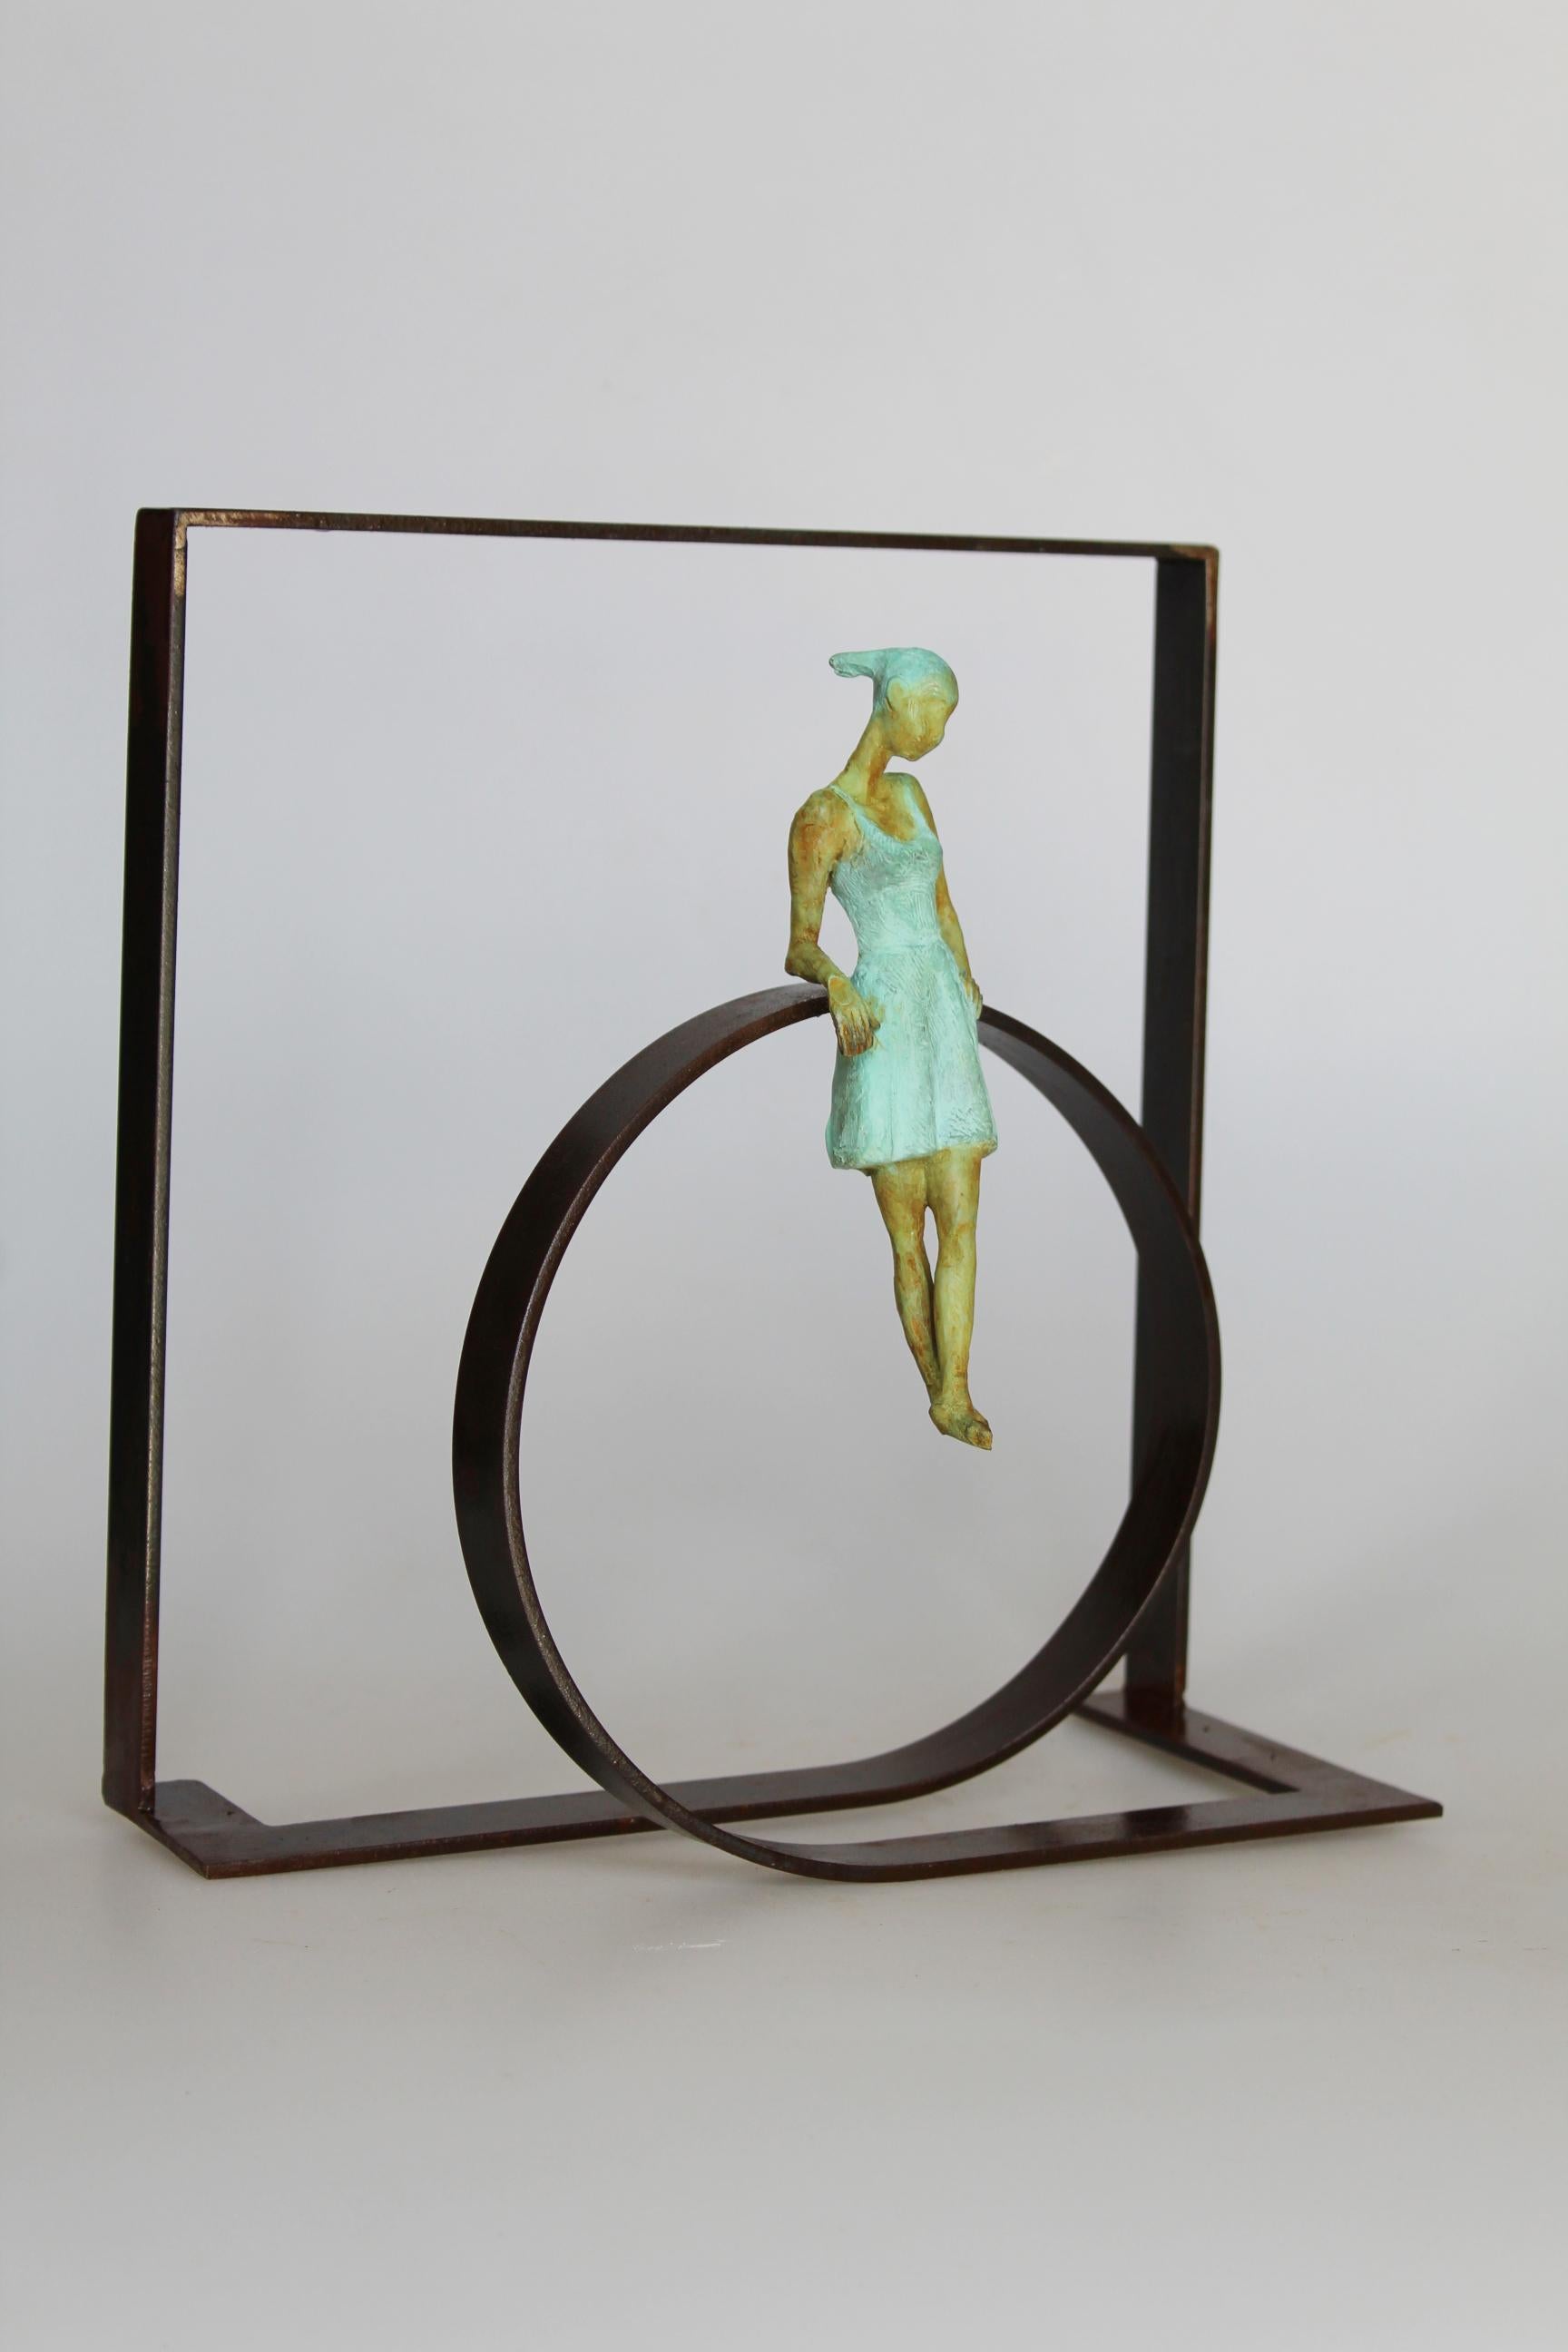 Joan Artigas Planas Figurative Sculpture - "Martona's Circle" contemporary bronze mural sculpture figurative girl carefree 